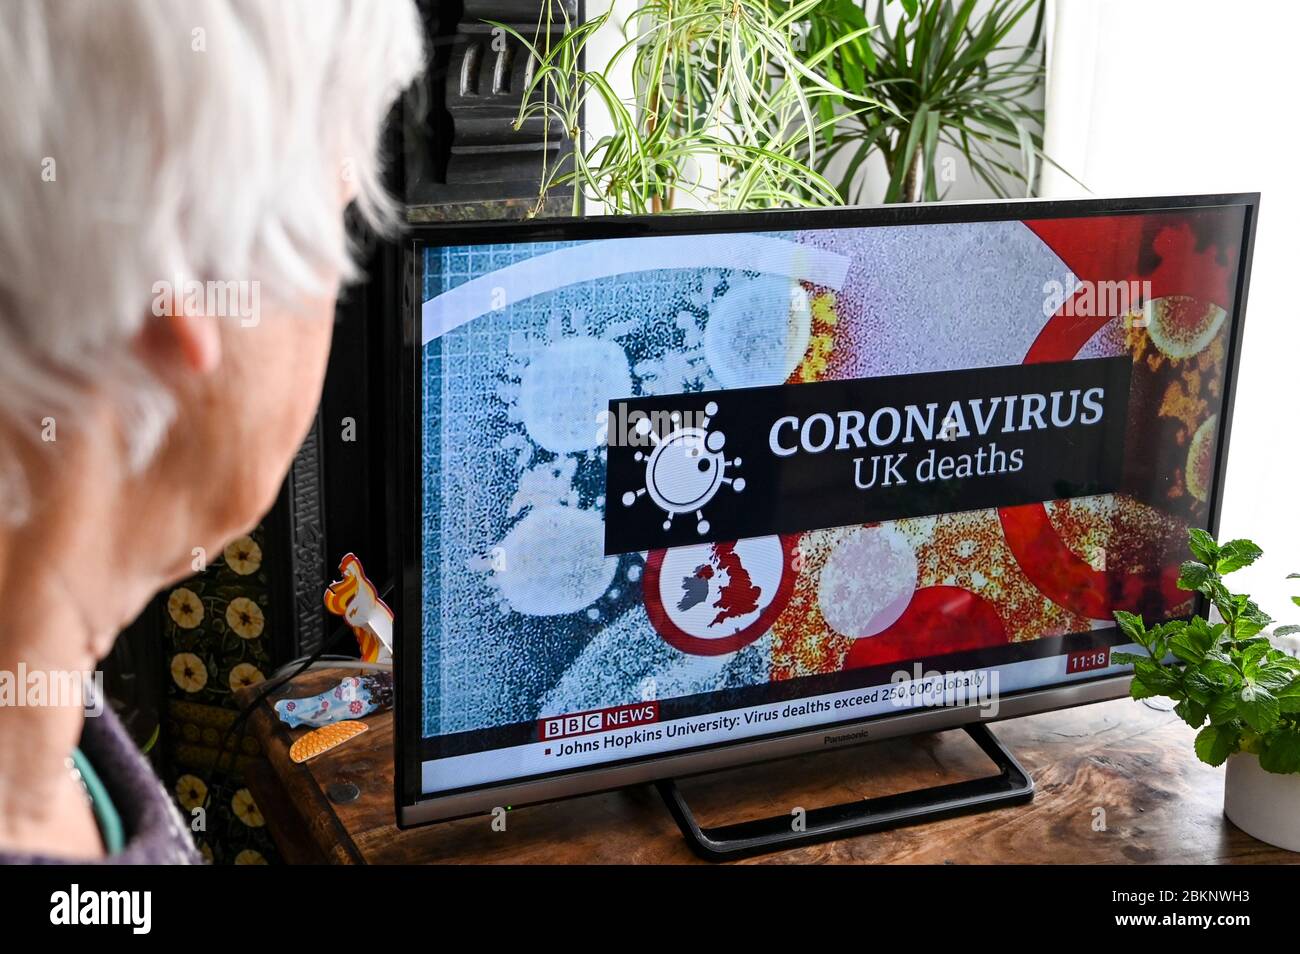 Coronavirus-Grafik in Fernsehnachrichten, die die Todesraten in Großbritannien und weltweit ankündigt, die von einem älteren Zuschauer beobachtet werden. Stockfoto